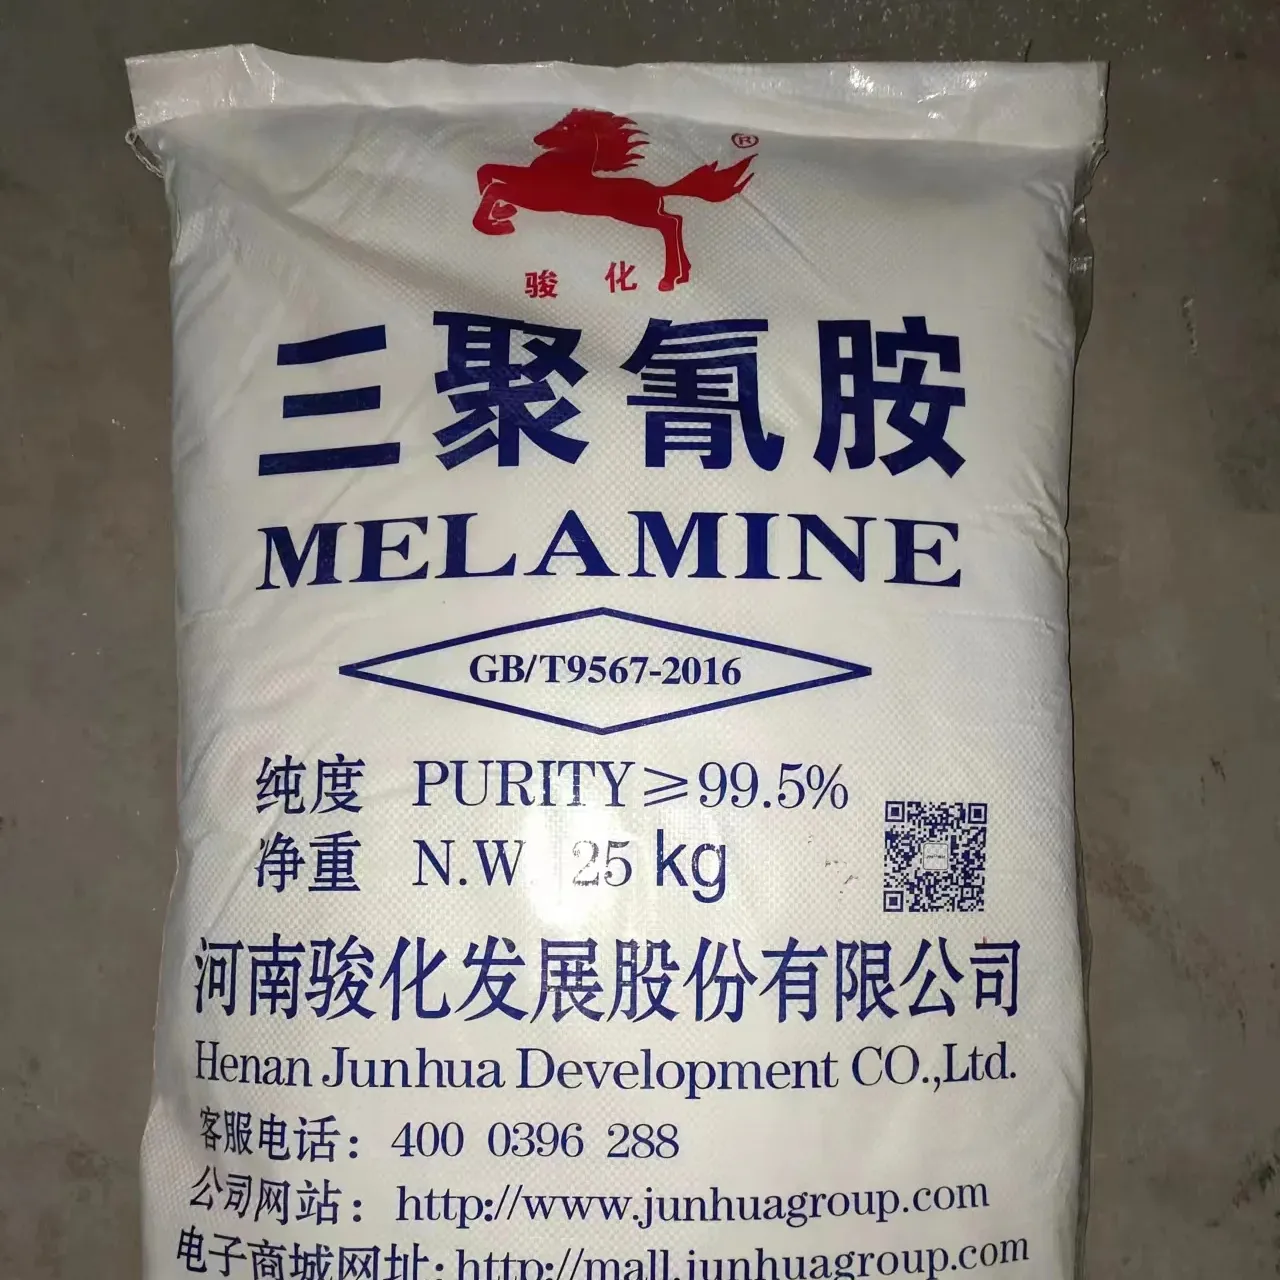 कारखाने 99.5% मेलामाइन का उत्पादन करता है